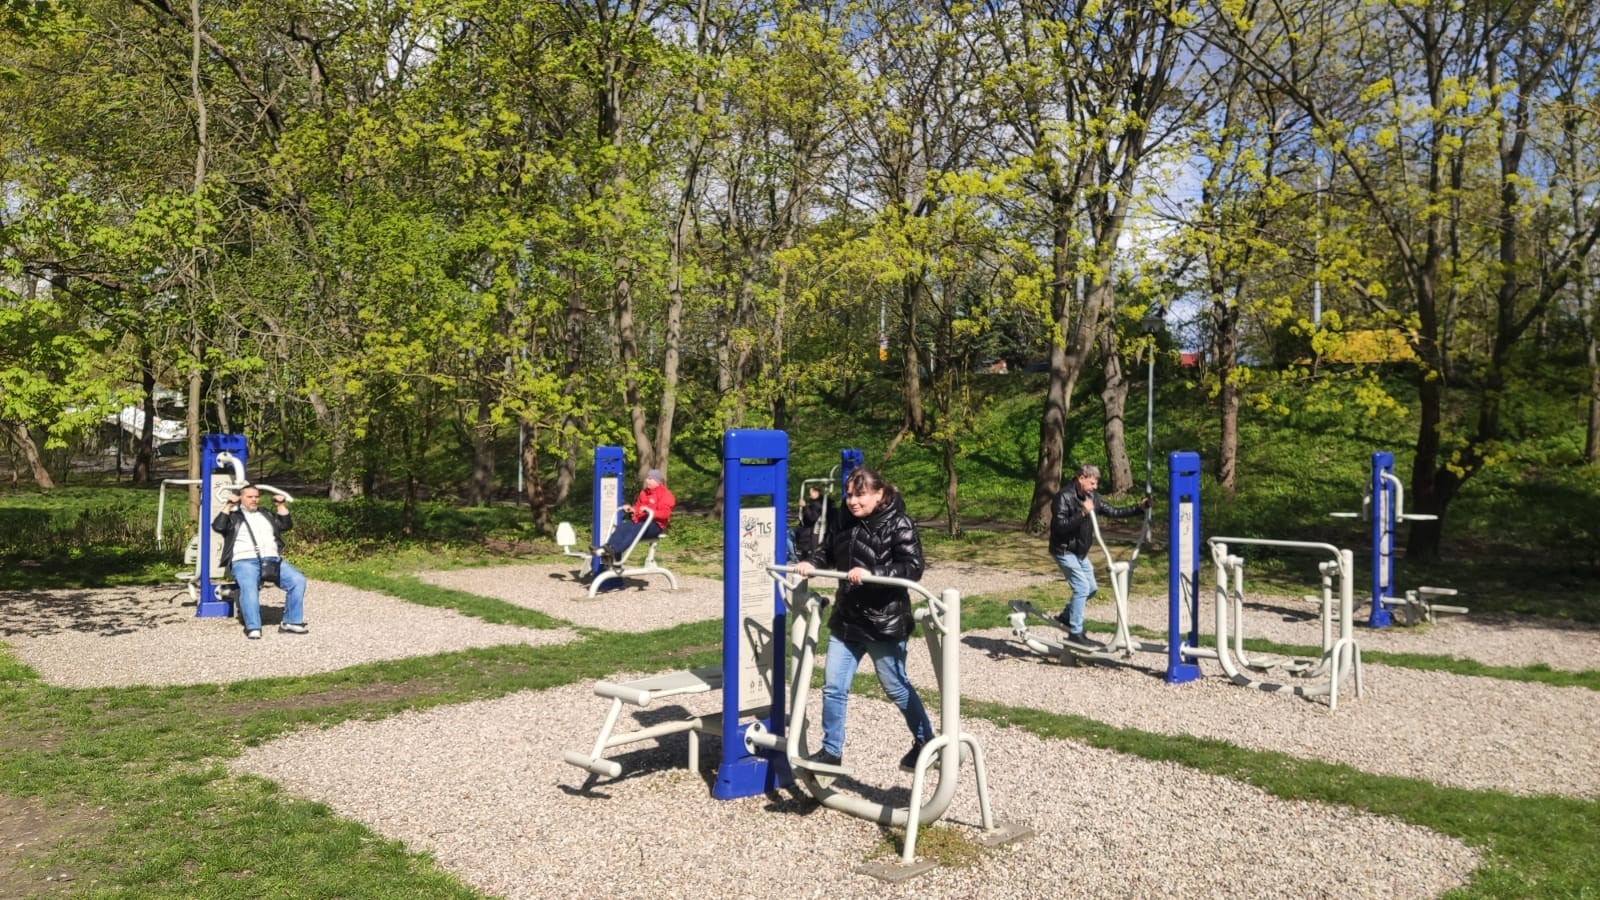 Grupa osób podczas ćwiczeń na siłowni napowietrznej zlokalizowanej w parku.  